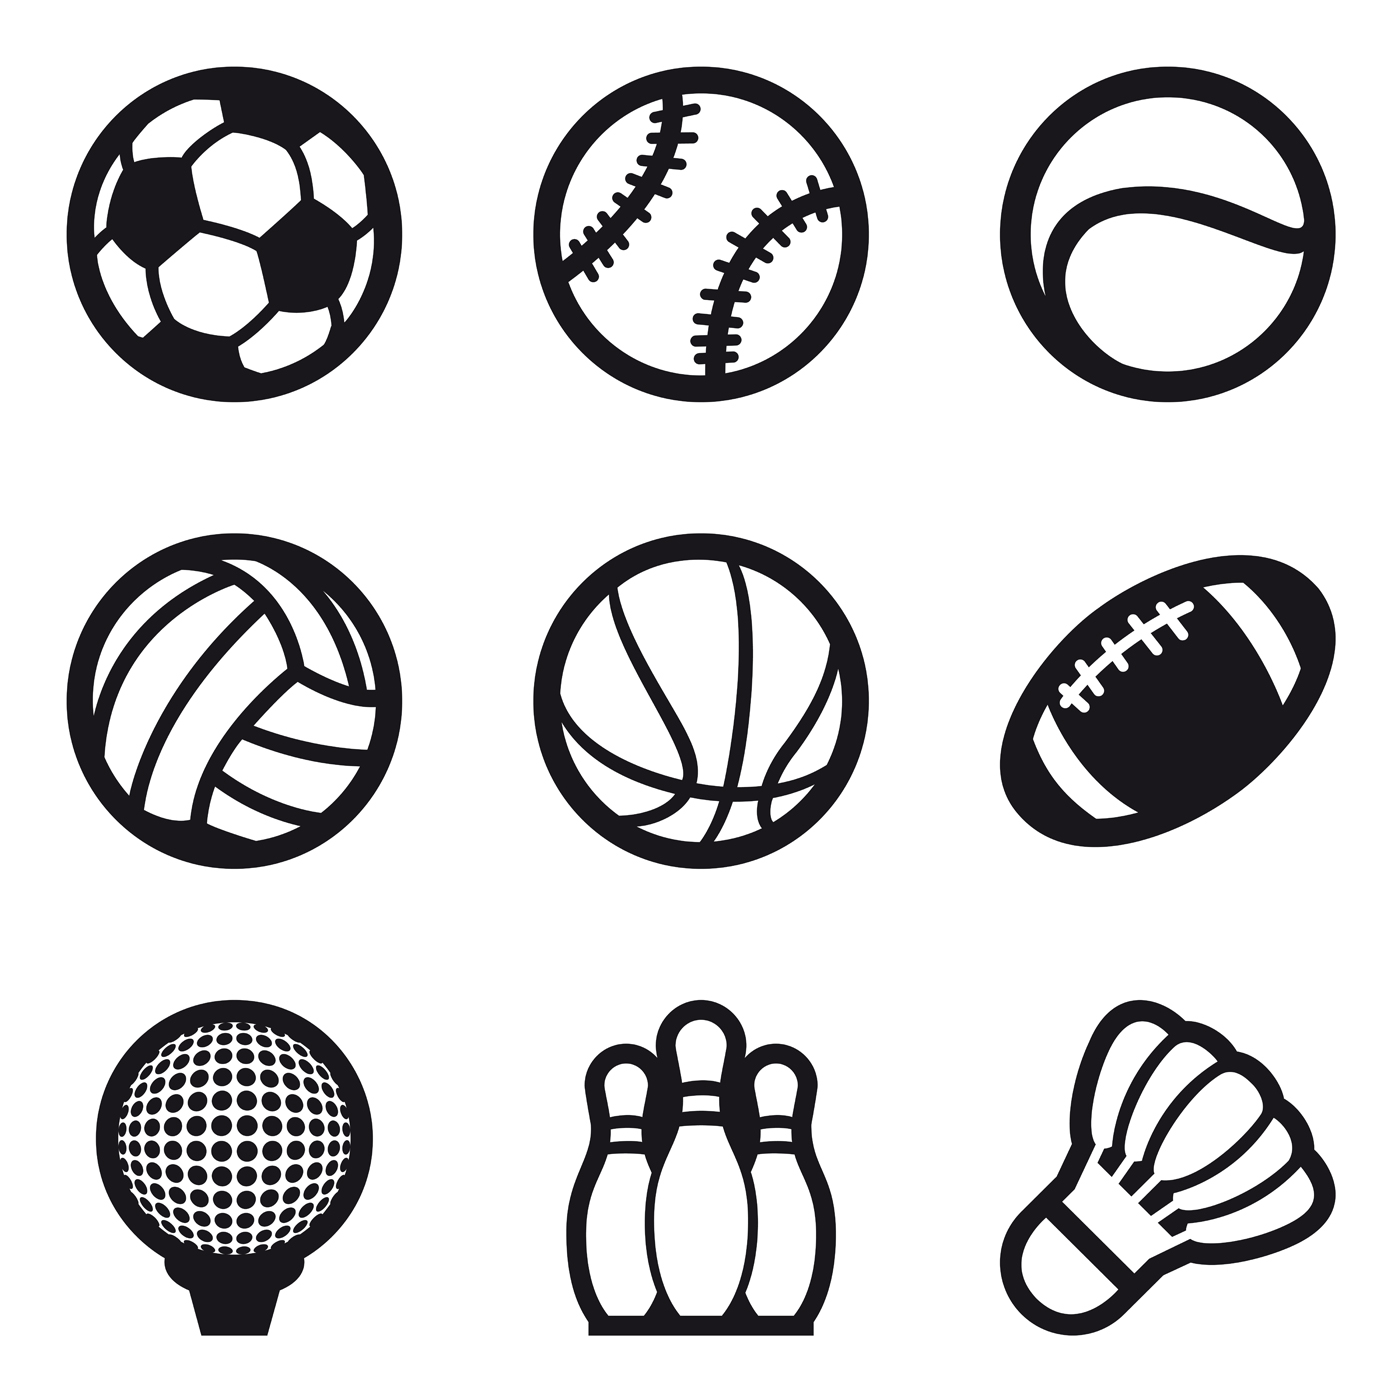 Os ícones Das Bolas Do Esporte Ajustaram Tipos Do Jogo, Estilo Dos